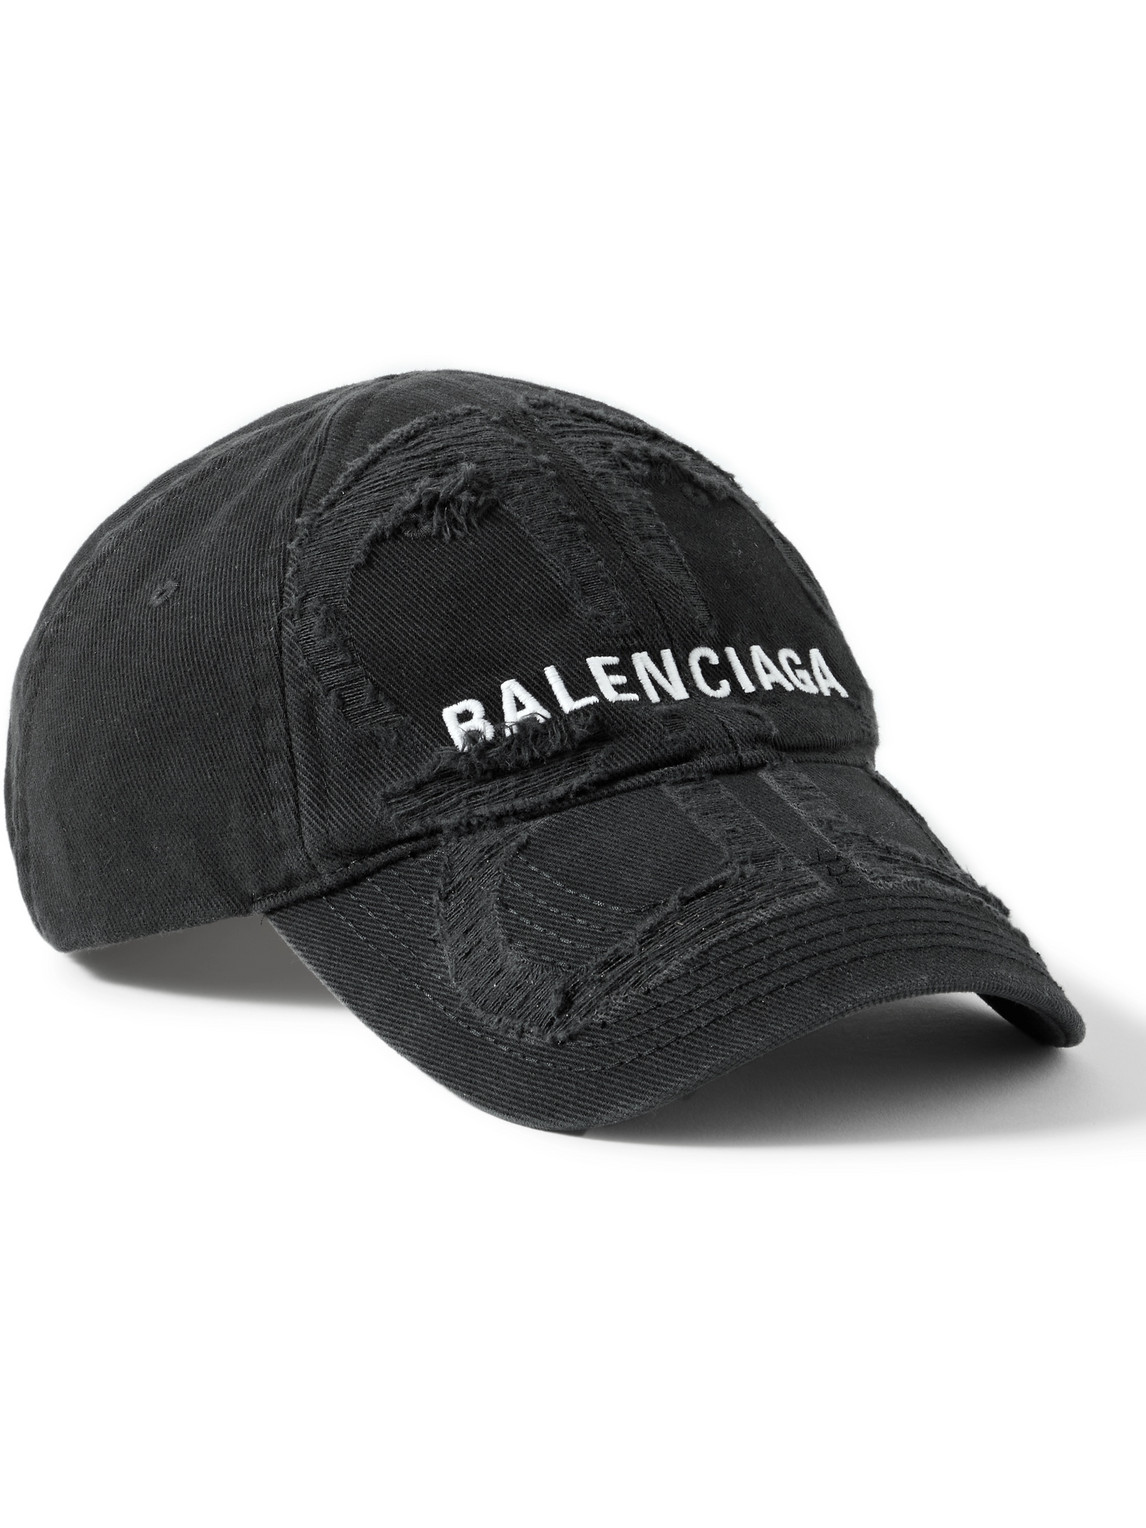 Balenciaga Distressed Cotton Baseball Cap In Black,white | ModeSens